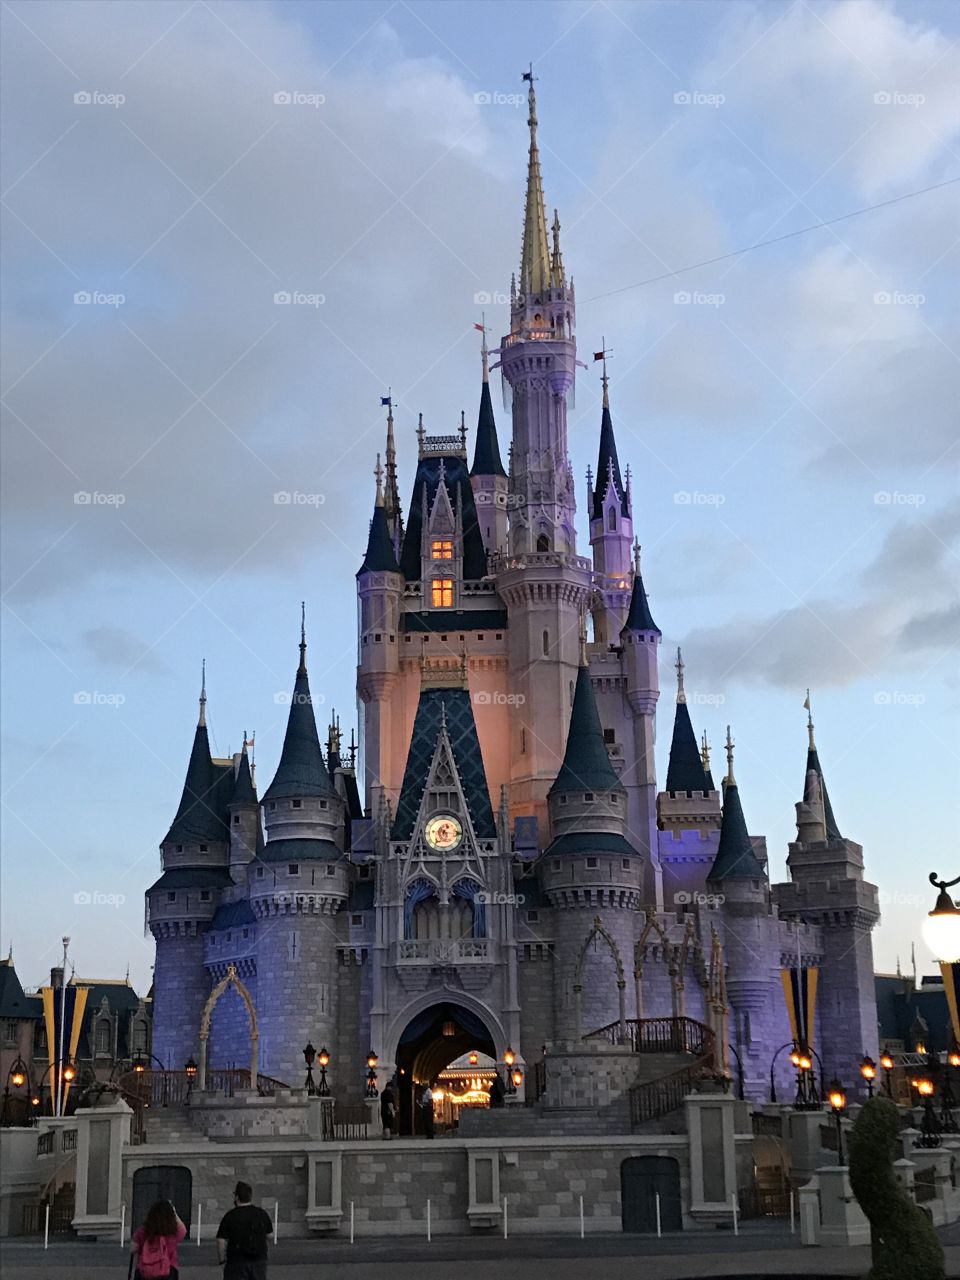 Cinderella's castle 